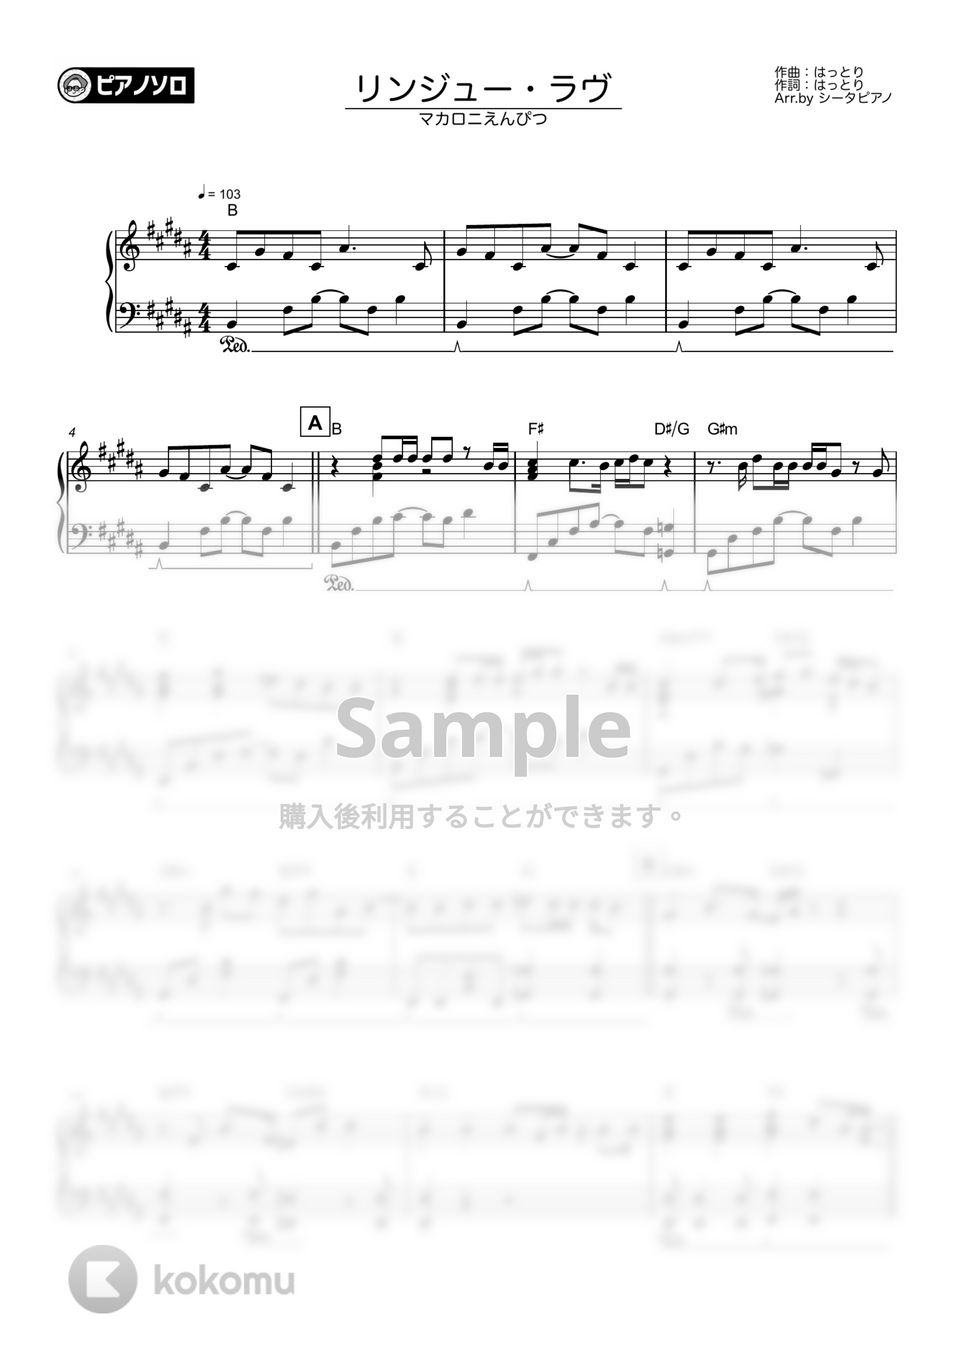 マカロニえんぴつ - リンジュー・ラヴ by シータピアノ